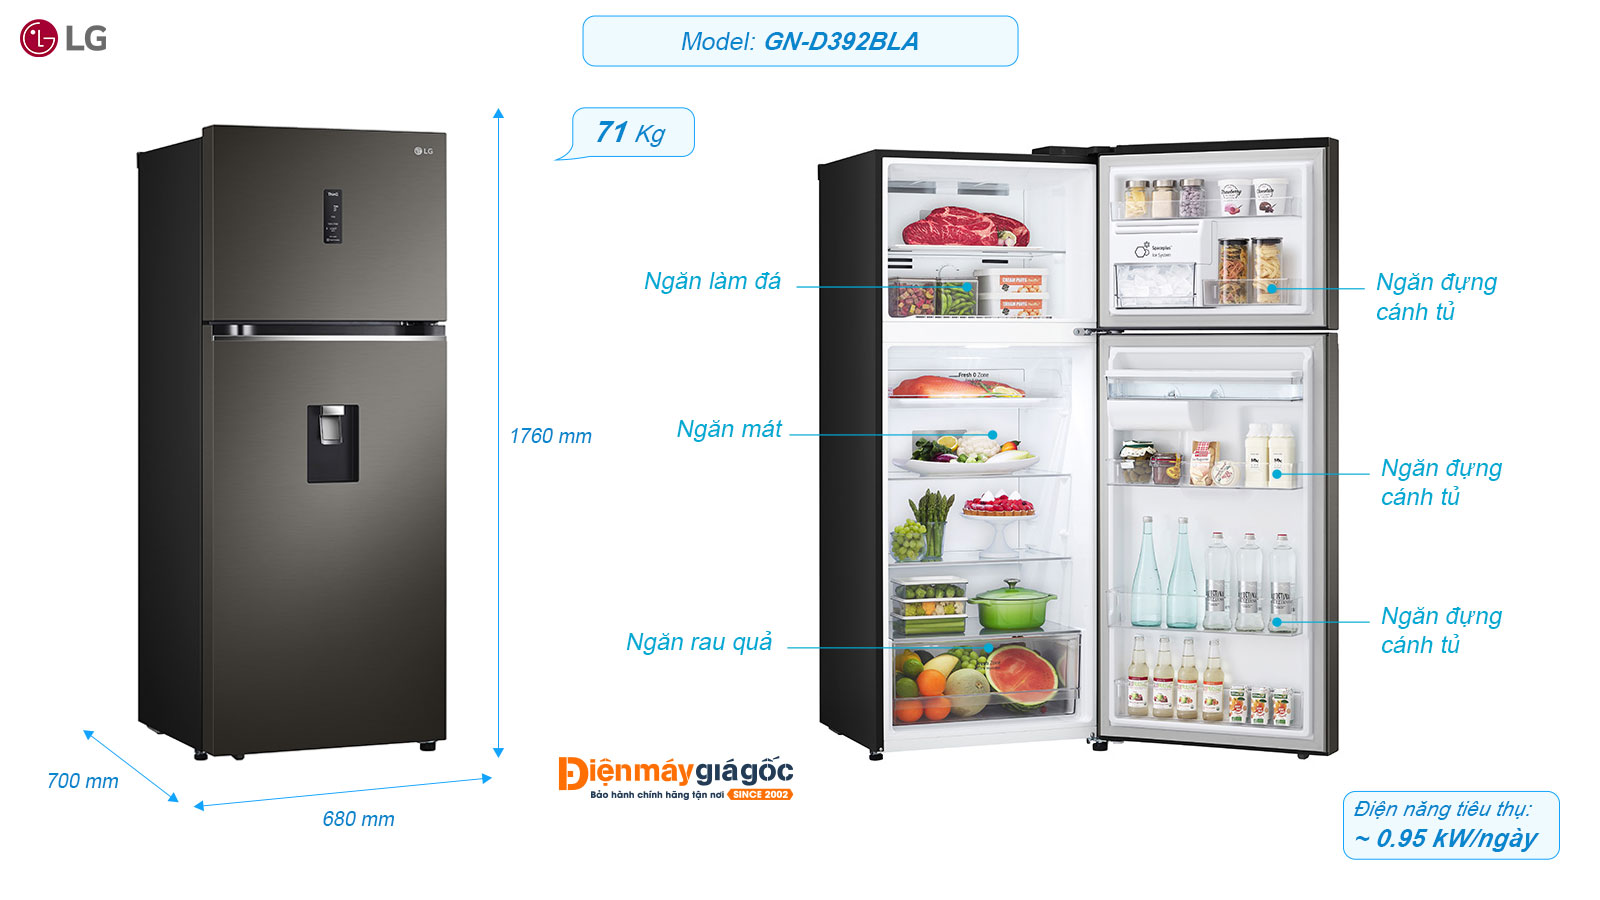 LG Top-Freezer Refrigerator 2-door inverter 394 Liters GN-D392BLA